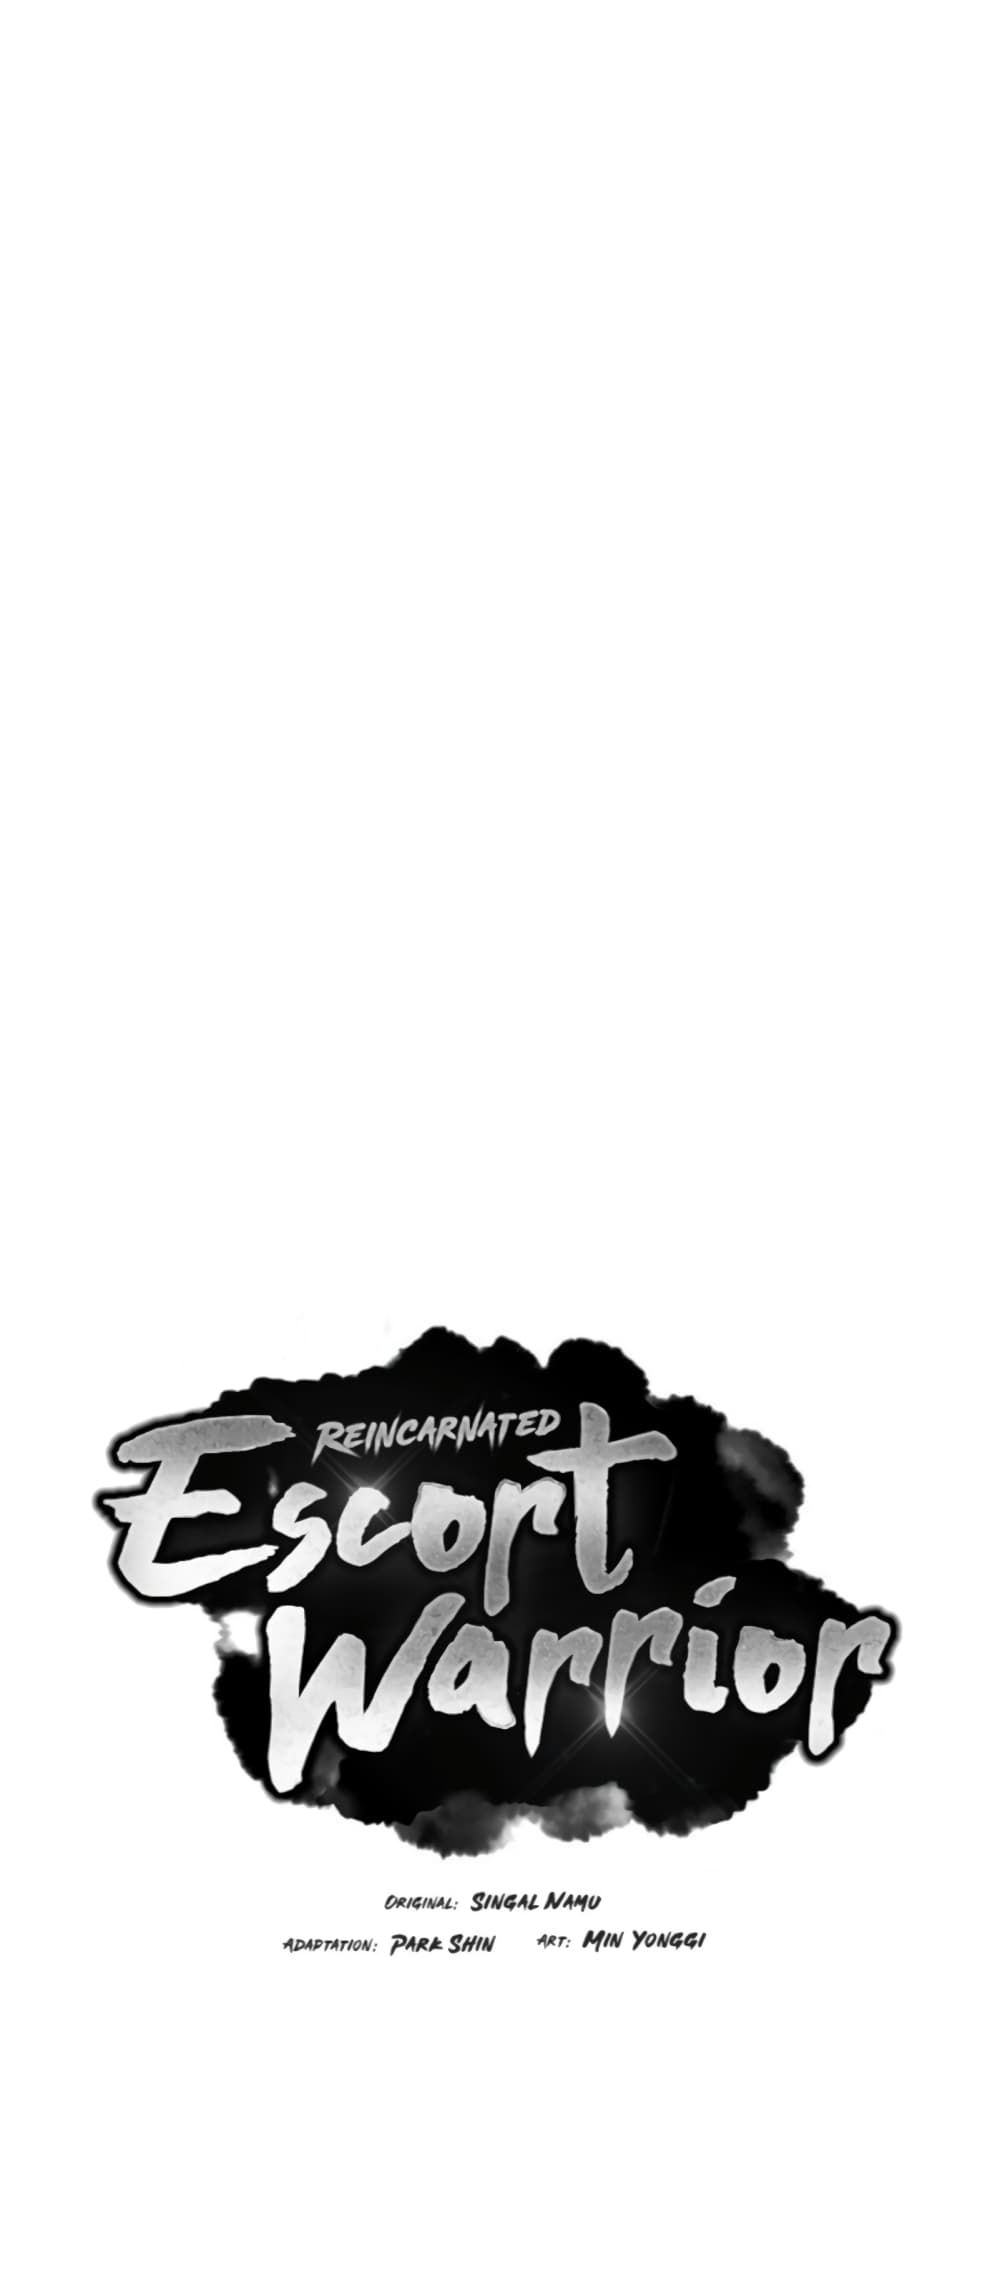 Reincarnated Escort Warrior 15-15